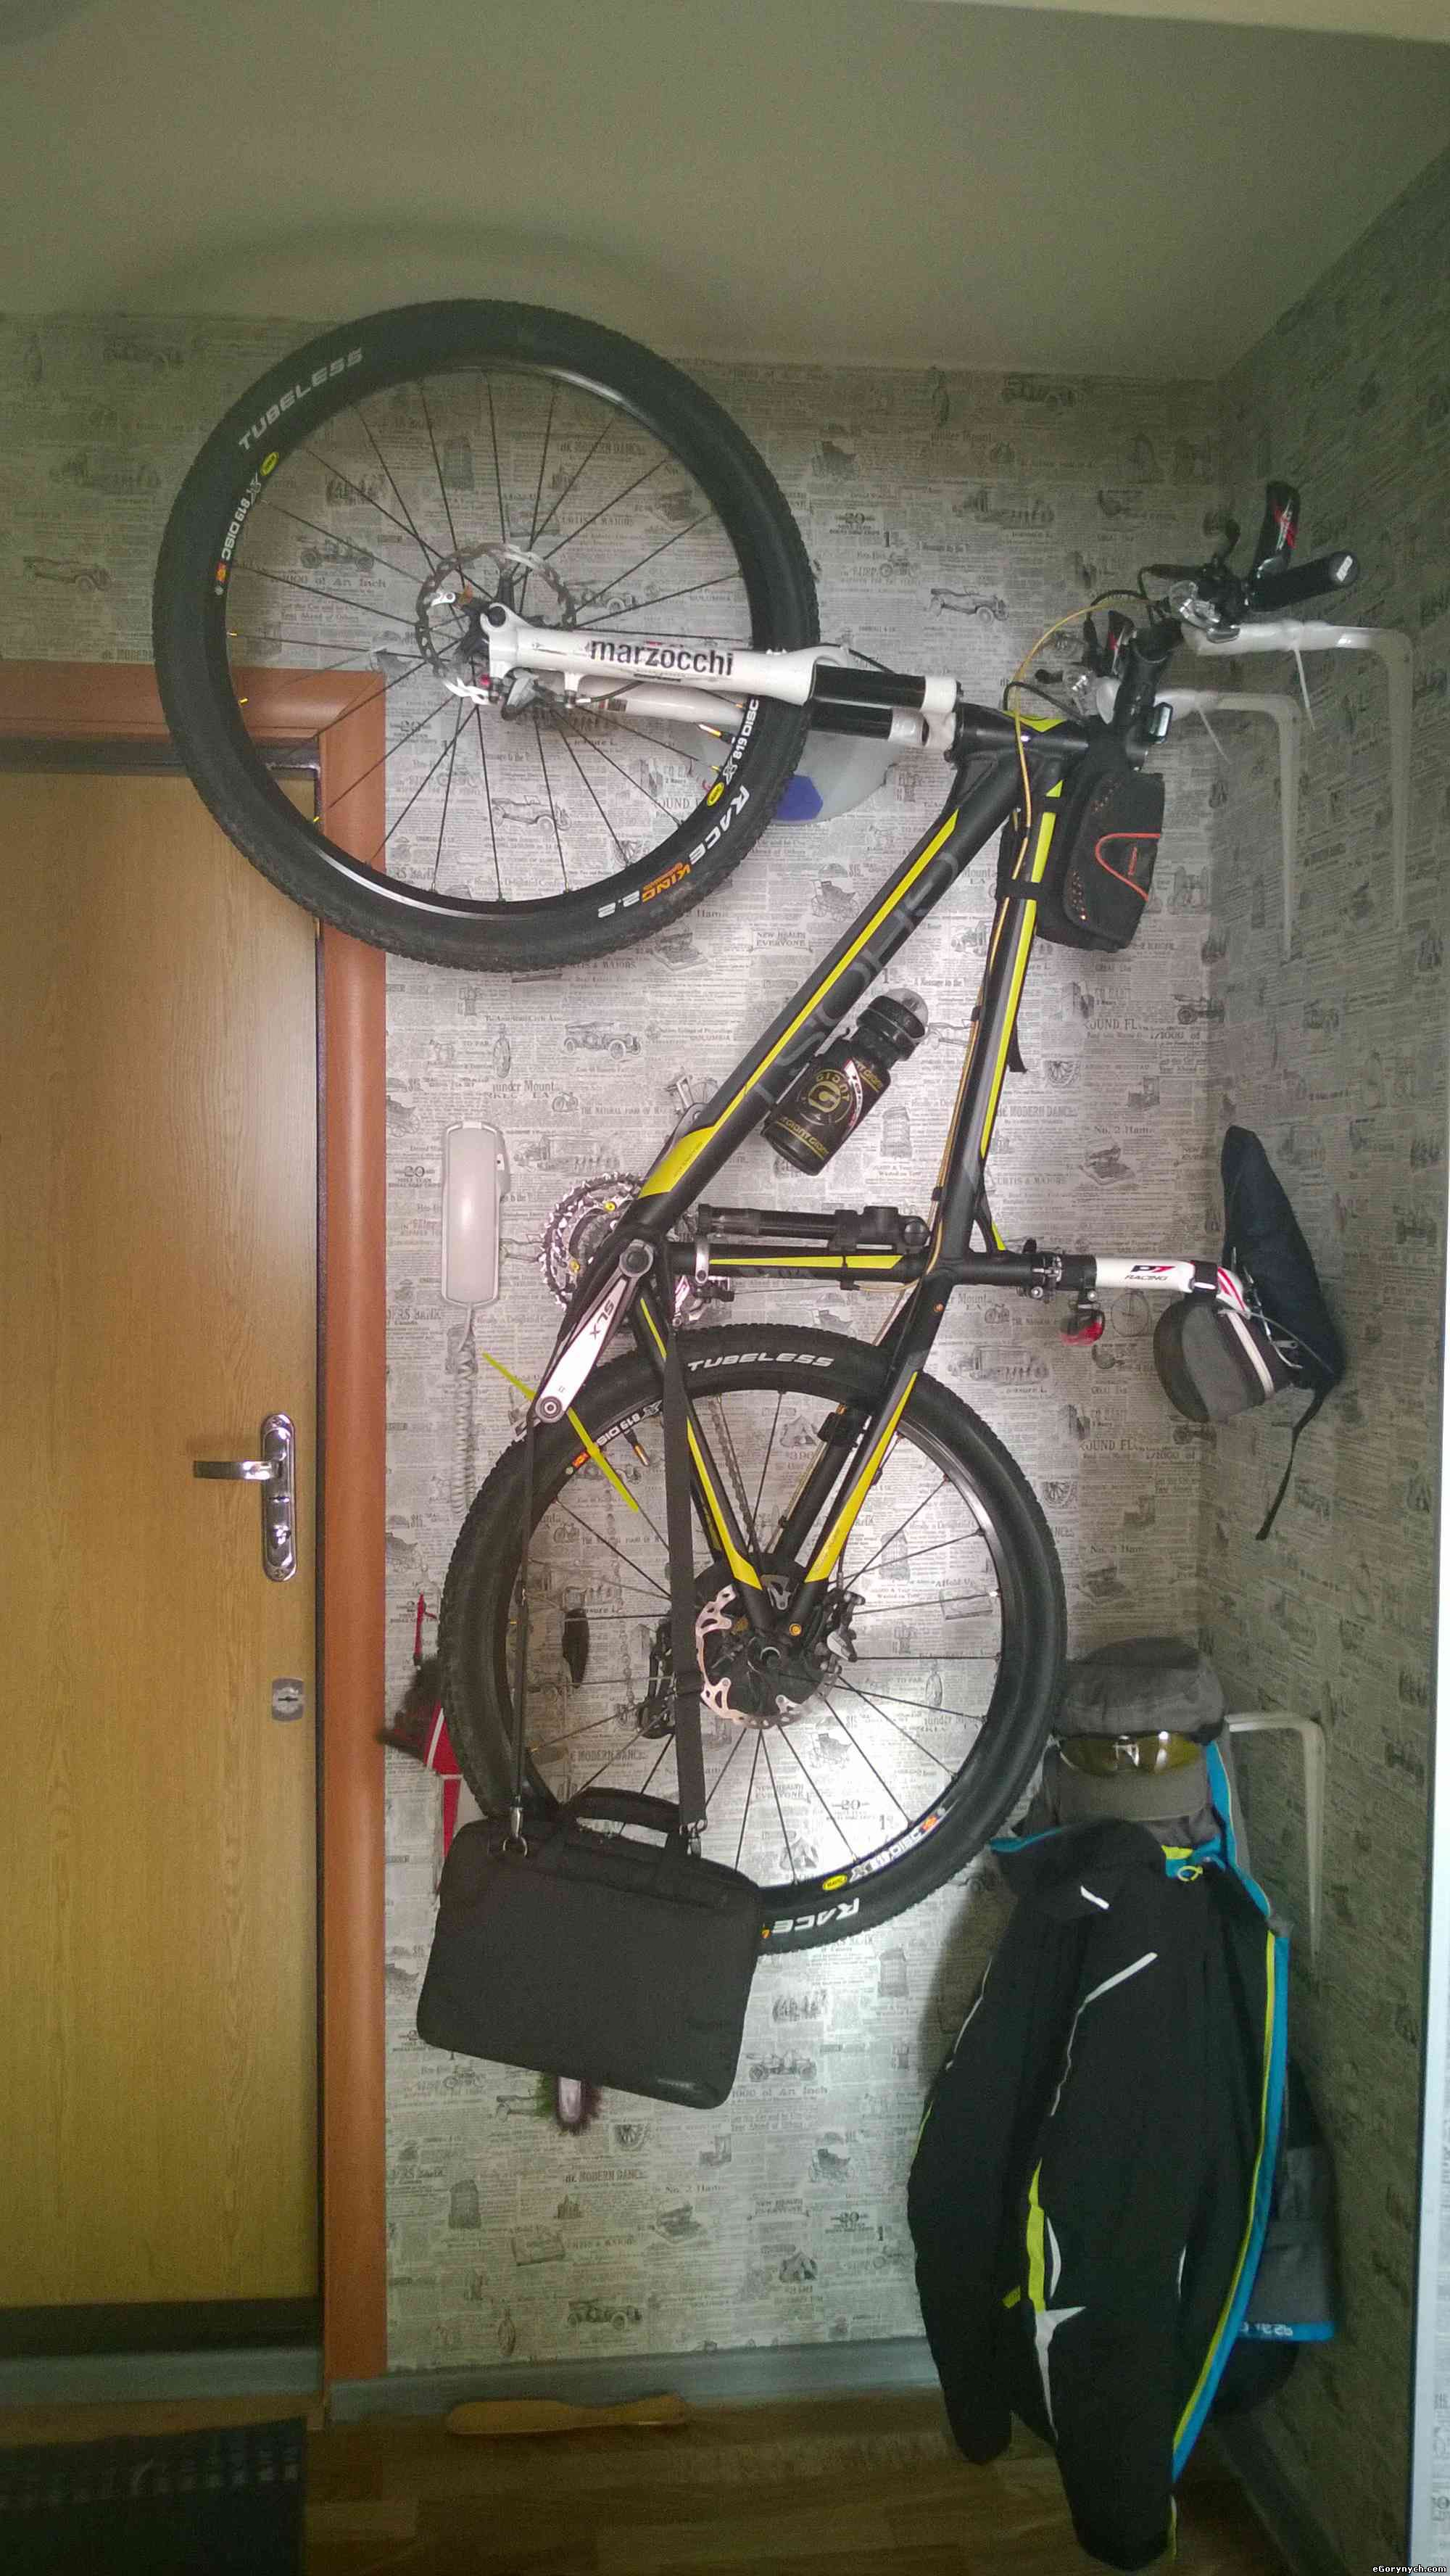 Хранение велосипеда